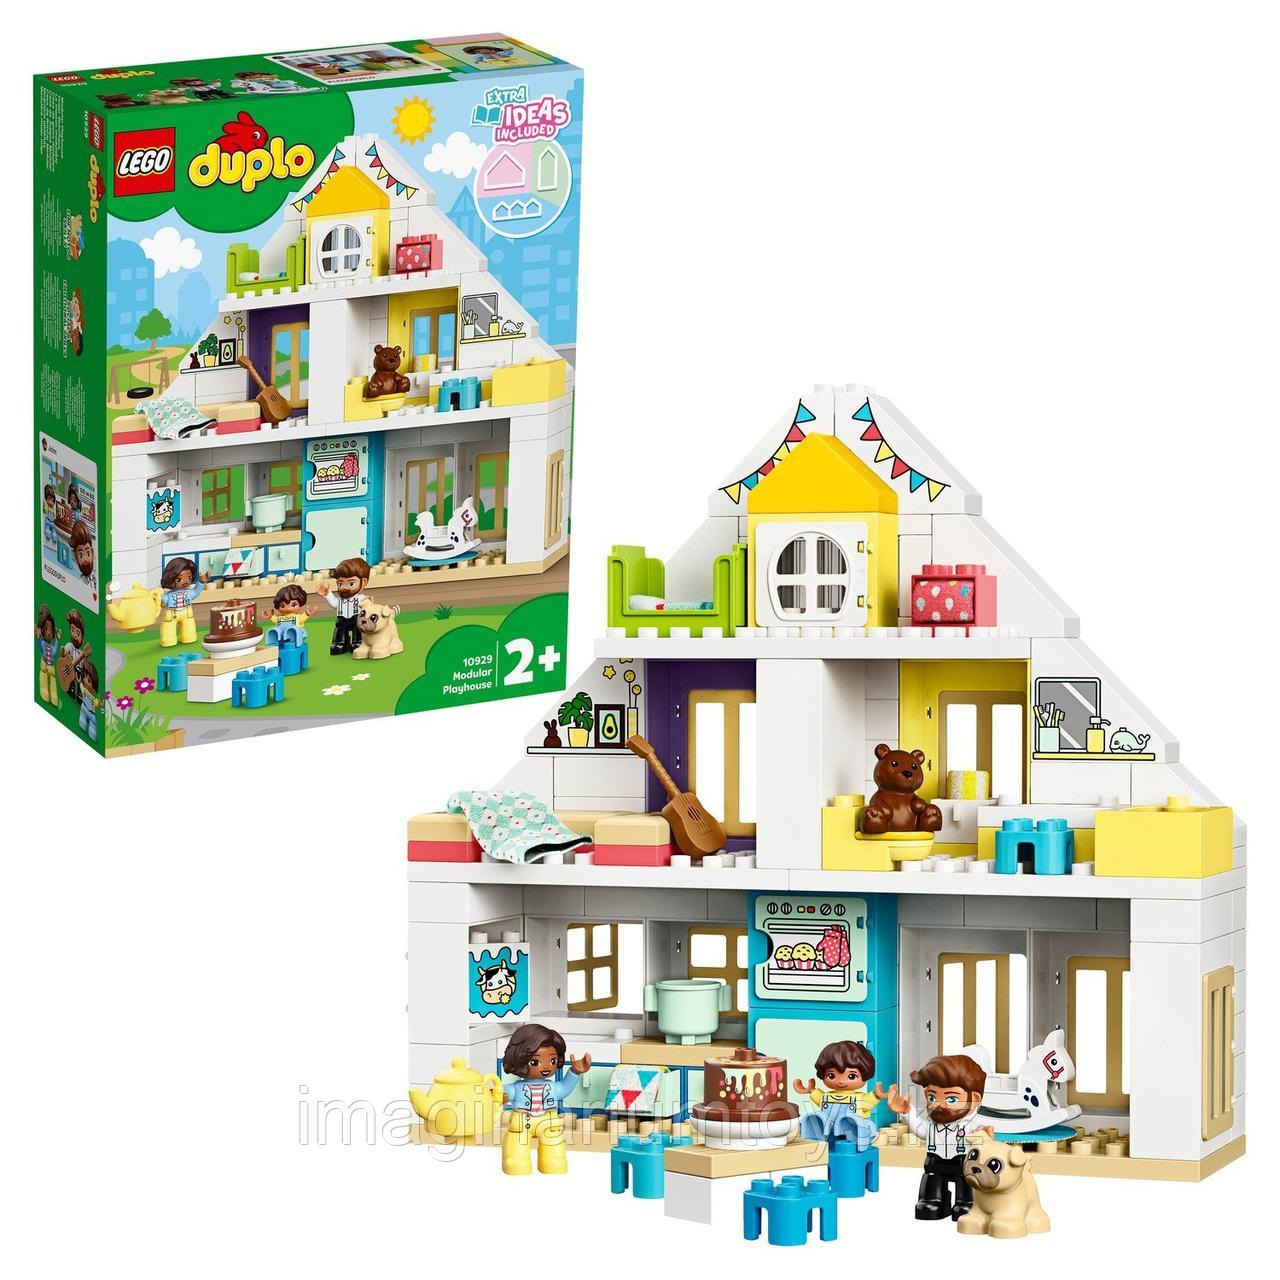 LEGO Duplo конструктор Модульный игрушечный дом 10929, фото 1